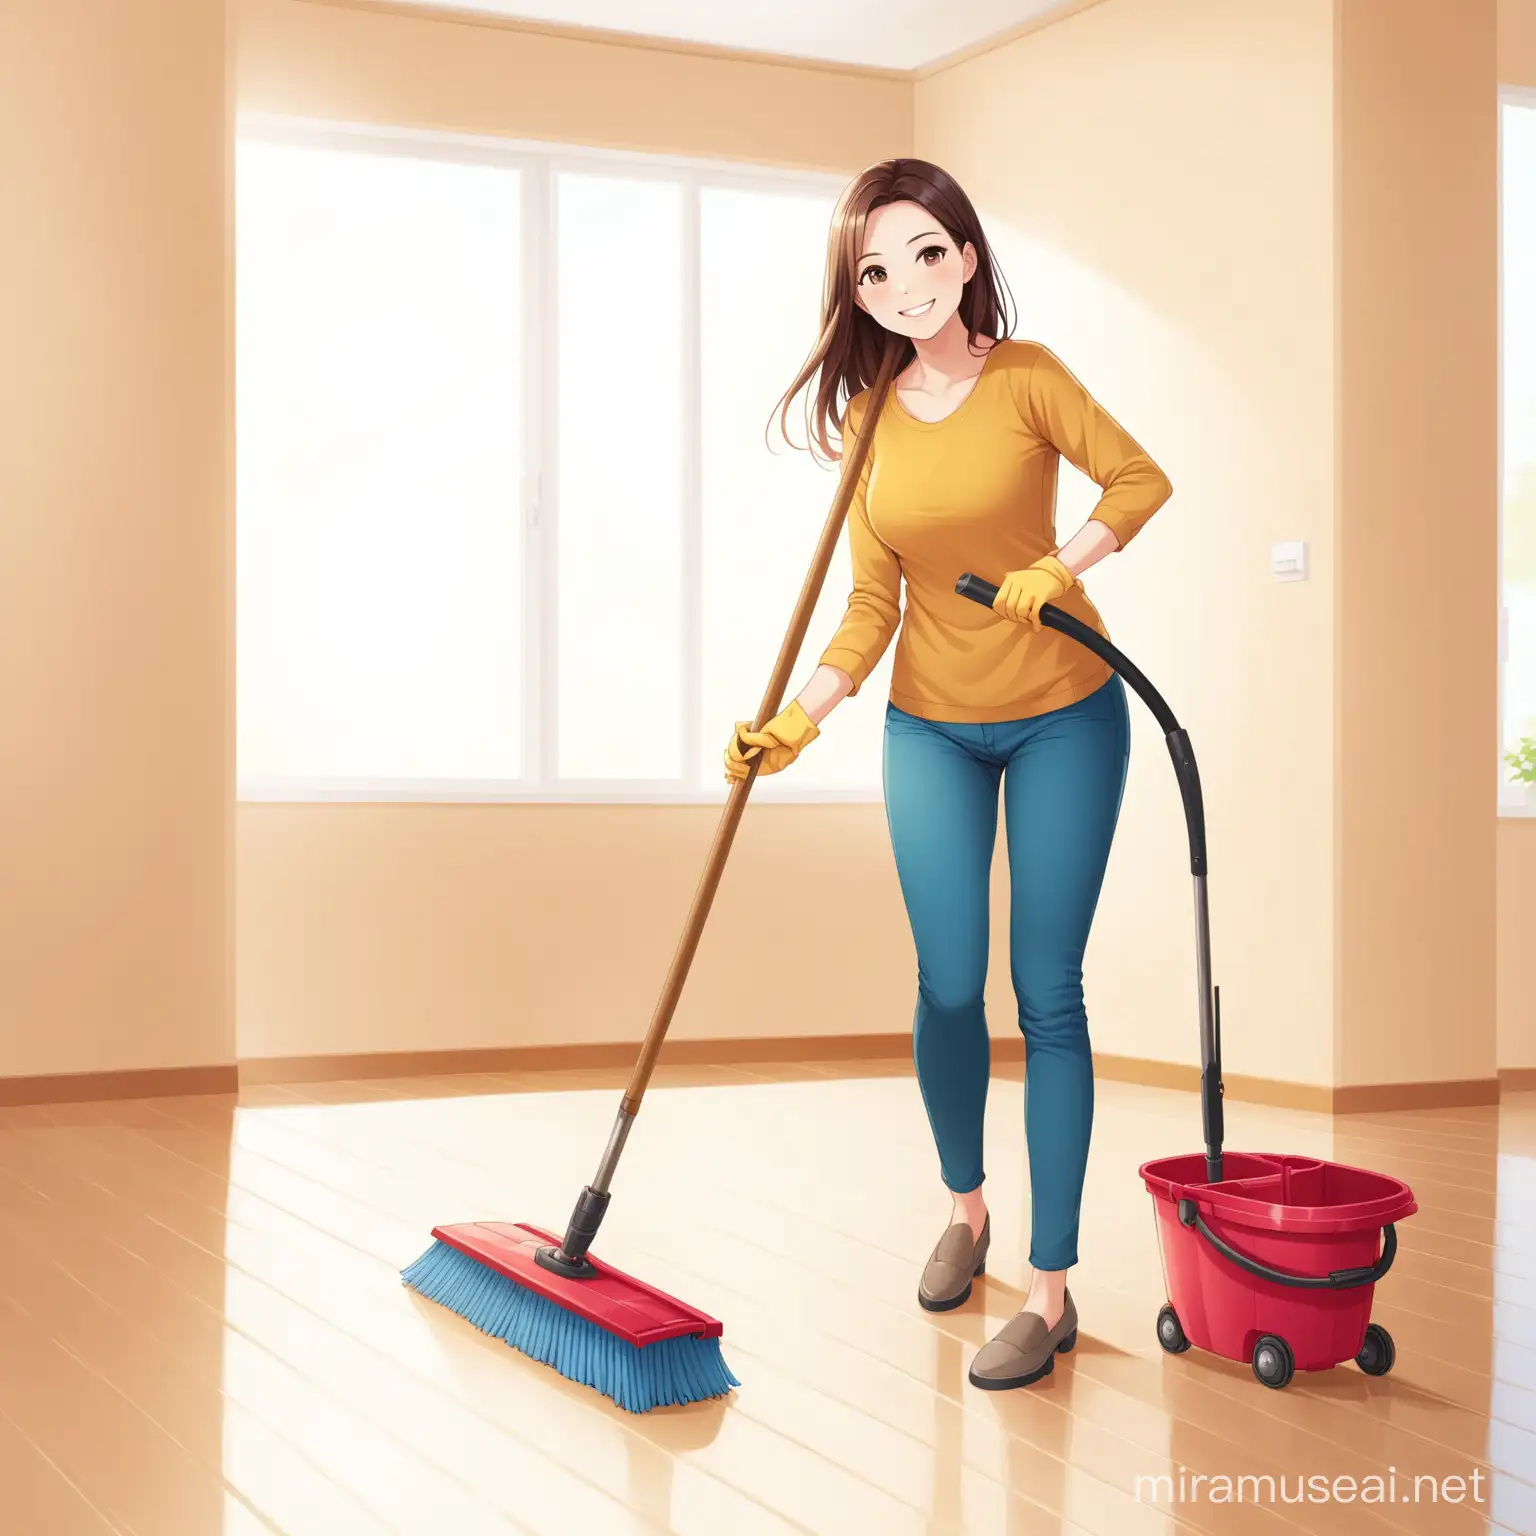 femme souriante nettoyant le sol avec son balais